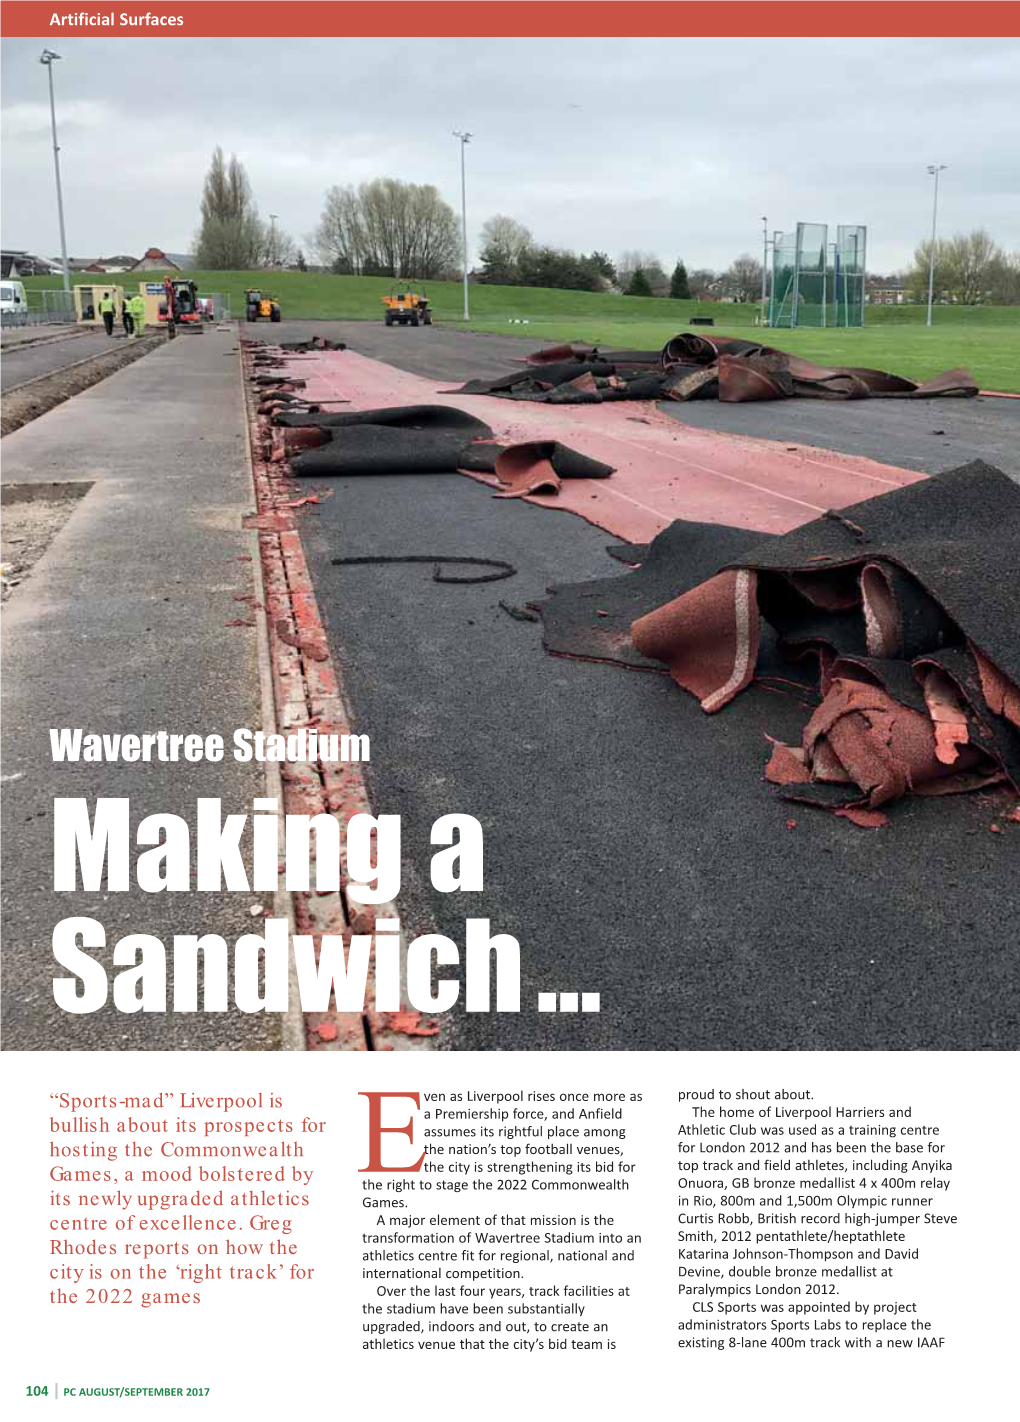 Wavertree Stadium Making a Sandwich